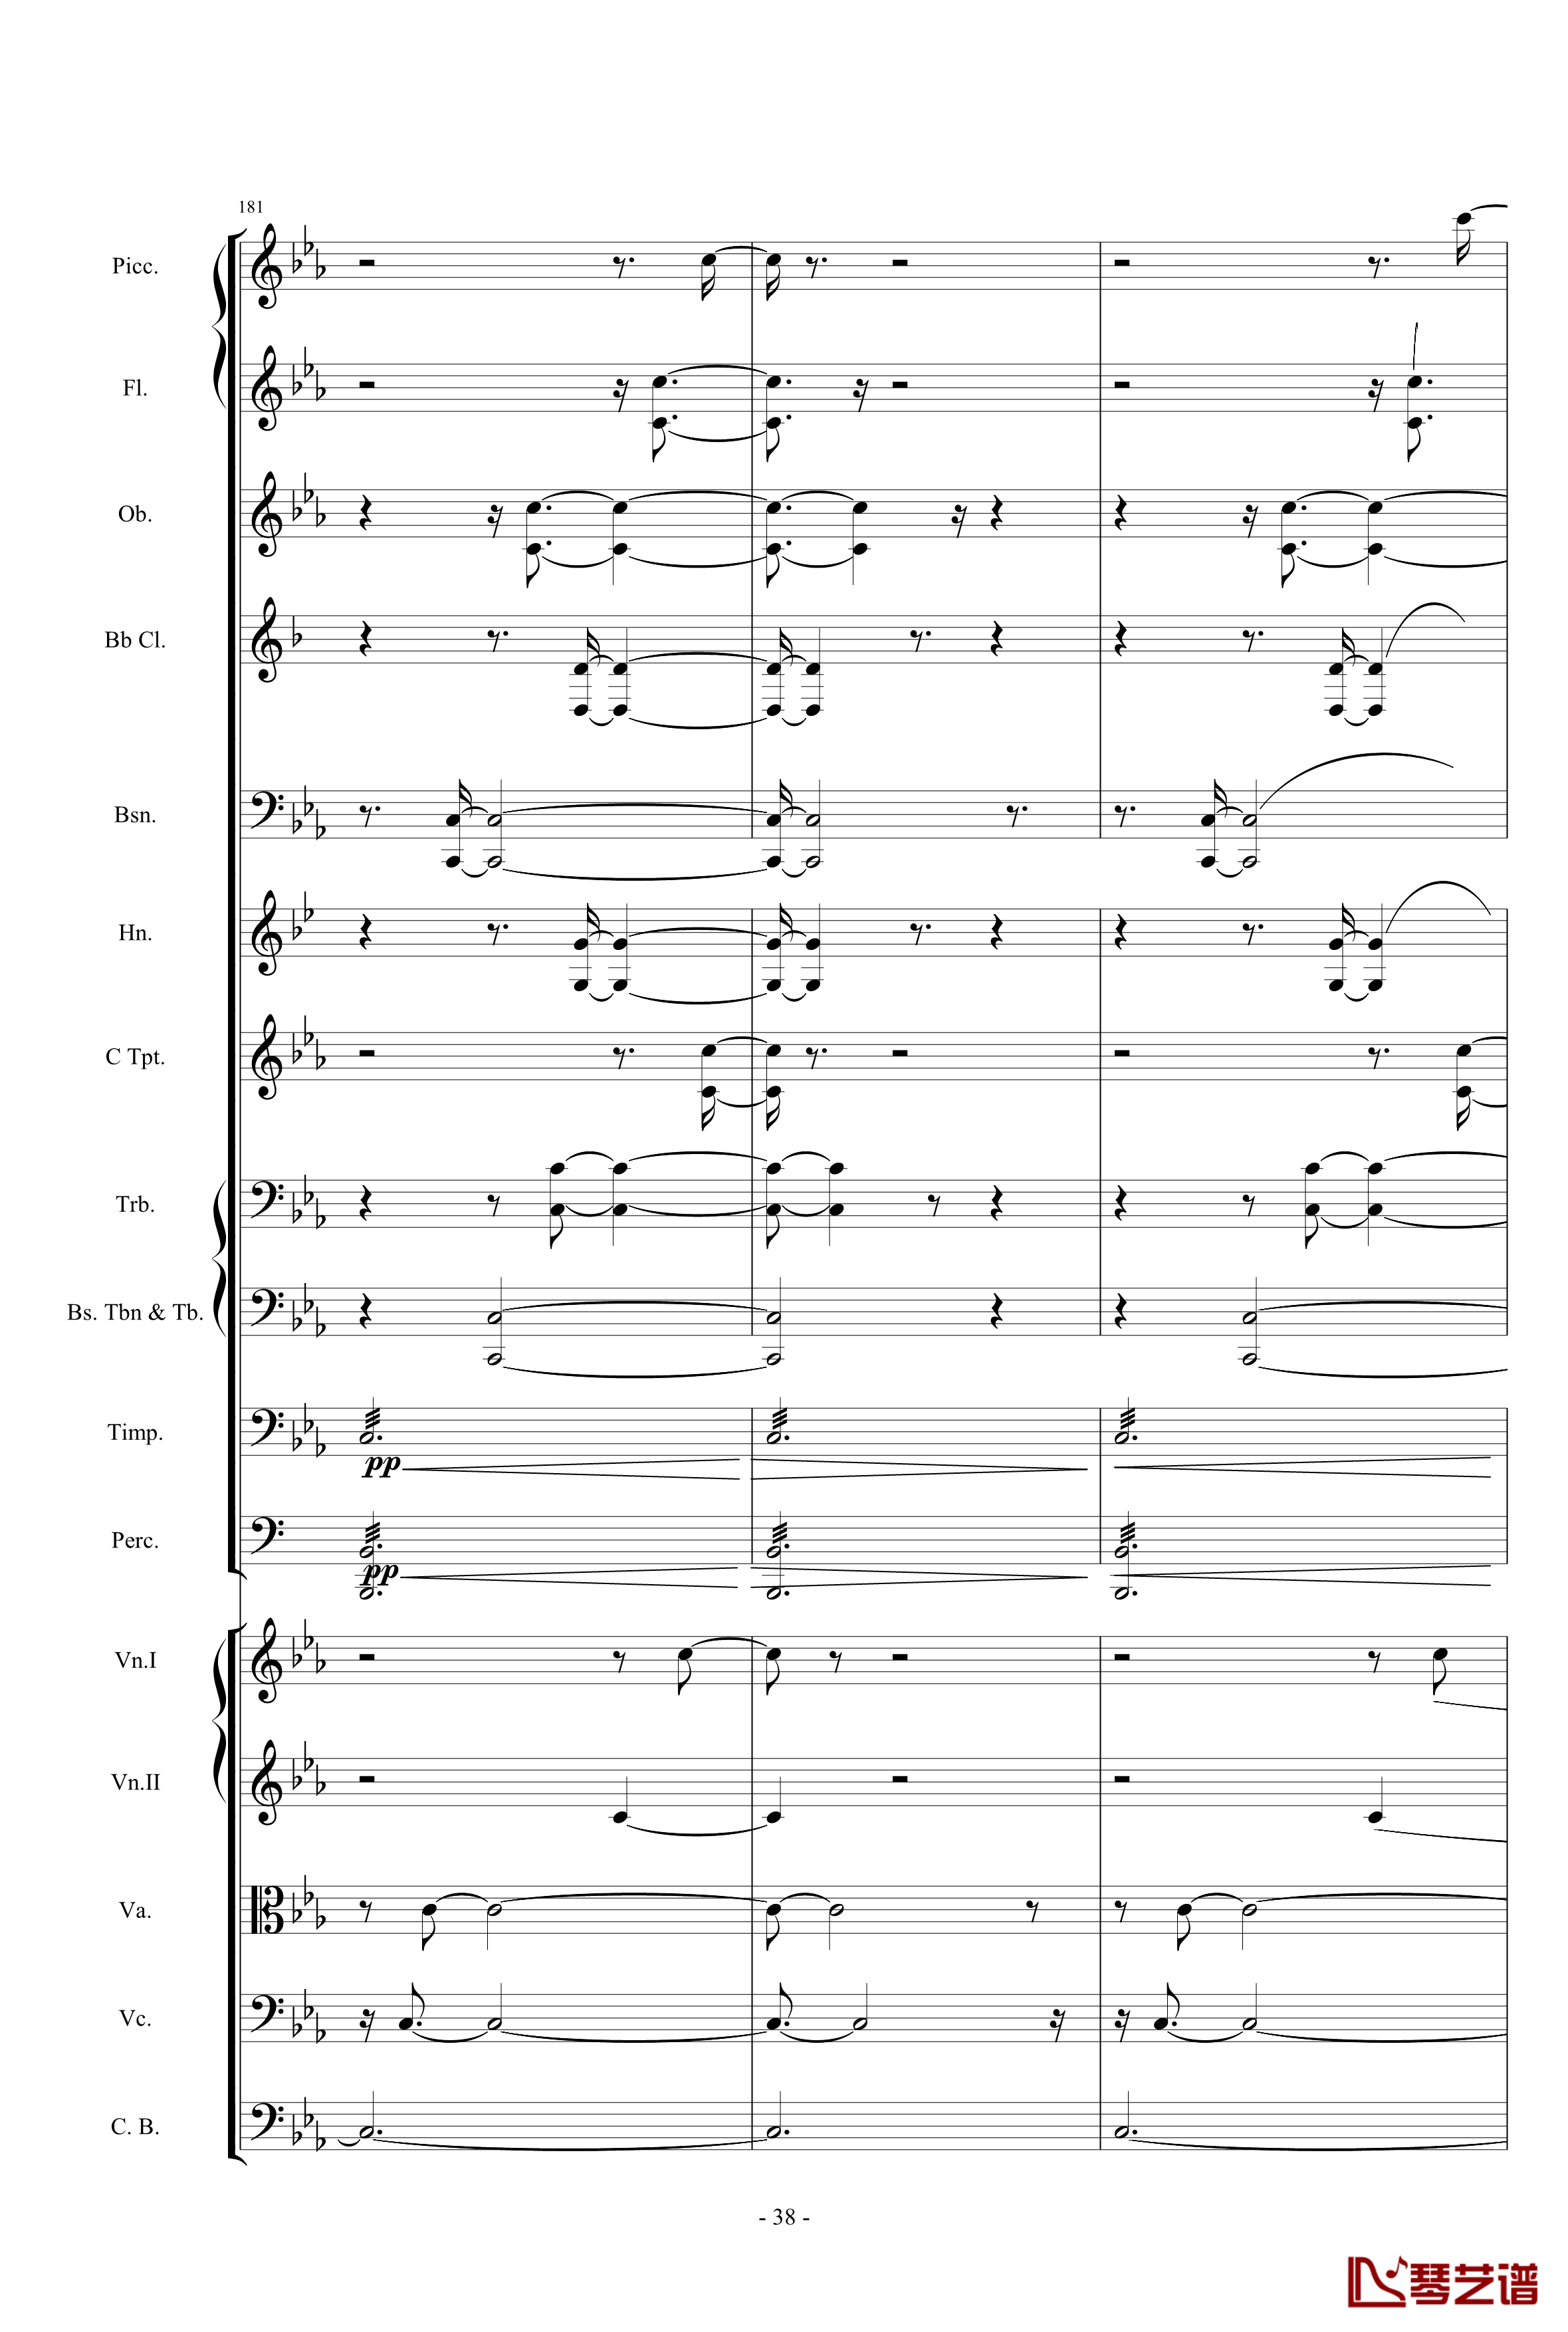 愤怒的小鸟交响曲第三乐章Op.5 no.3钢琴谱-1057257838